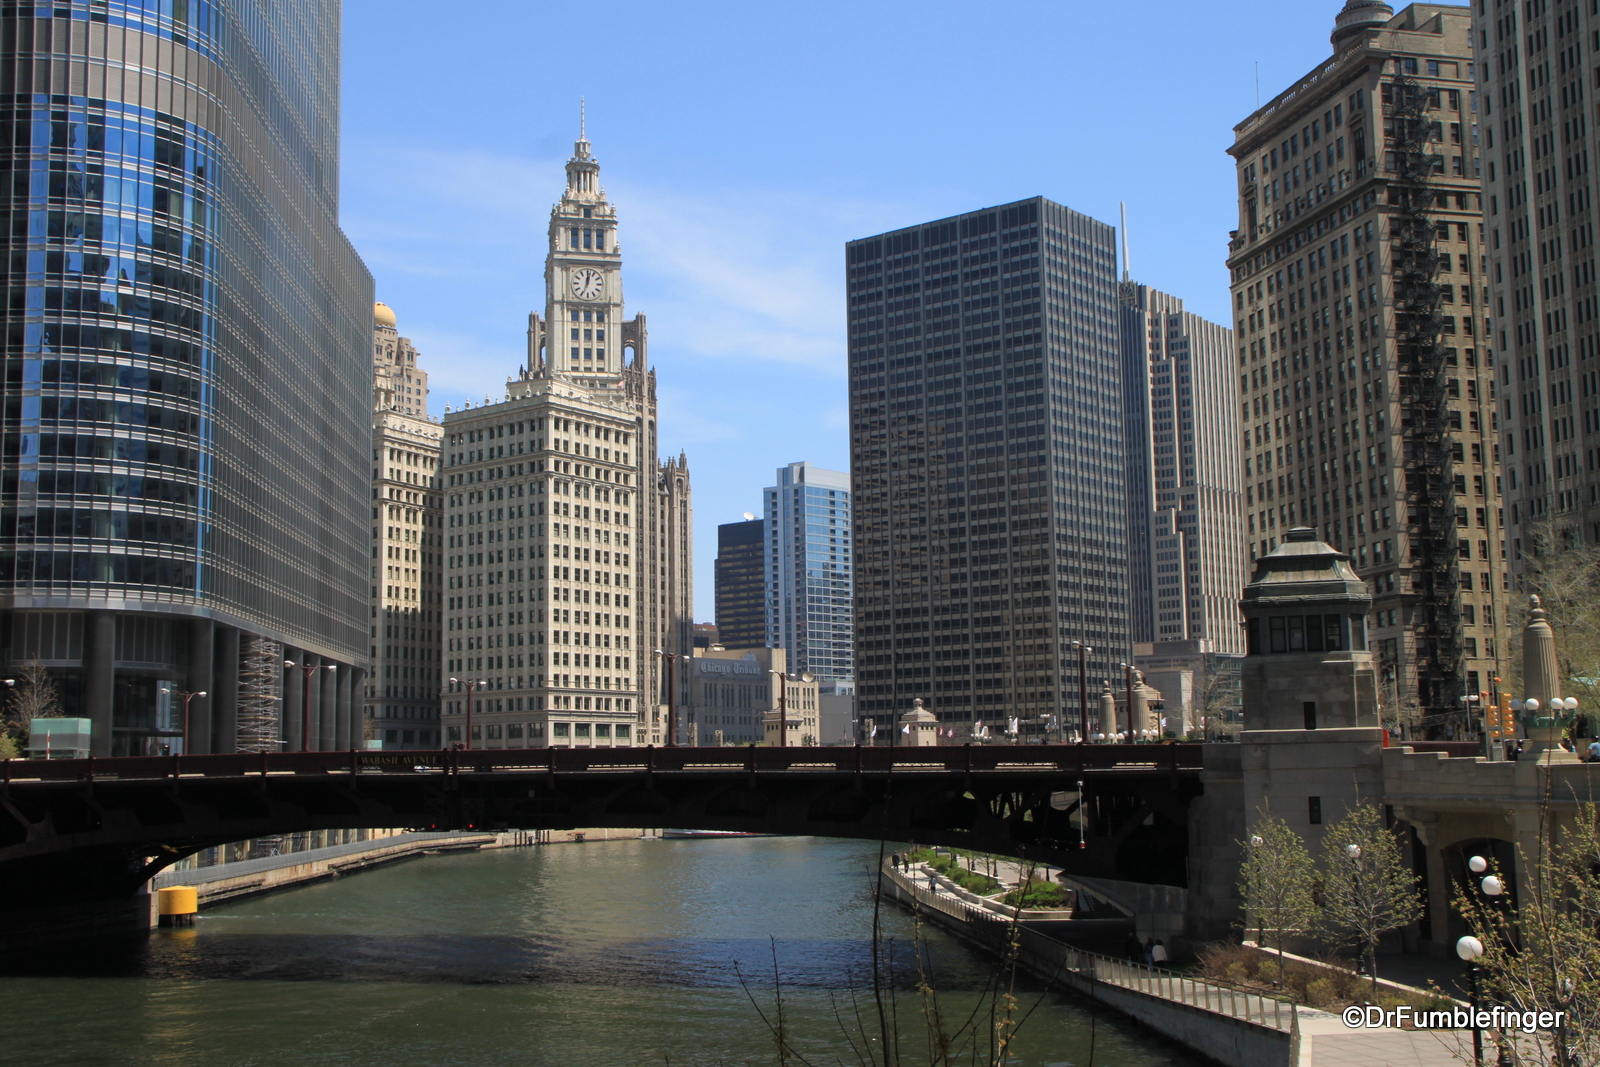 Chicago's Riverwalk